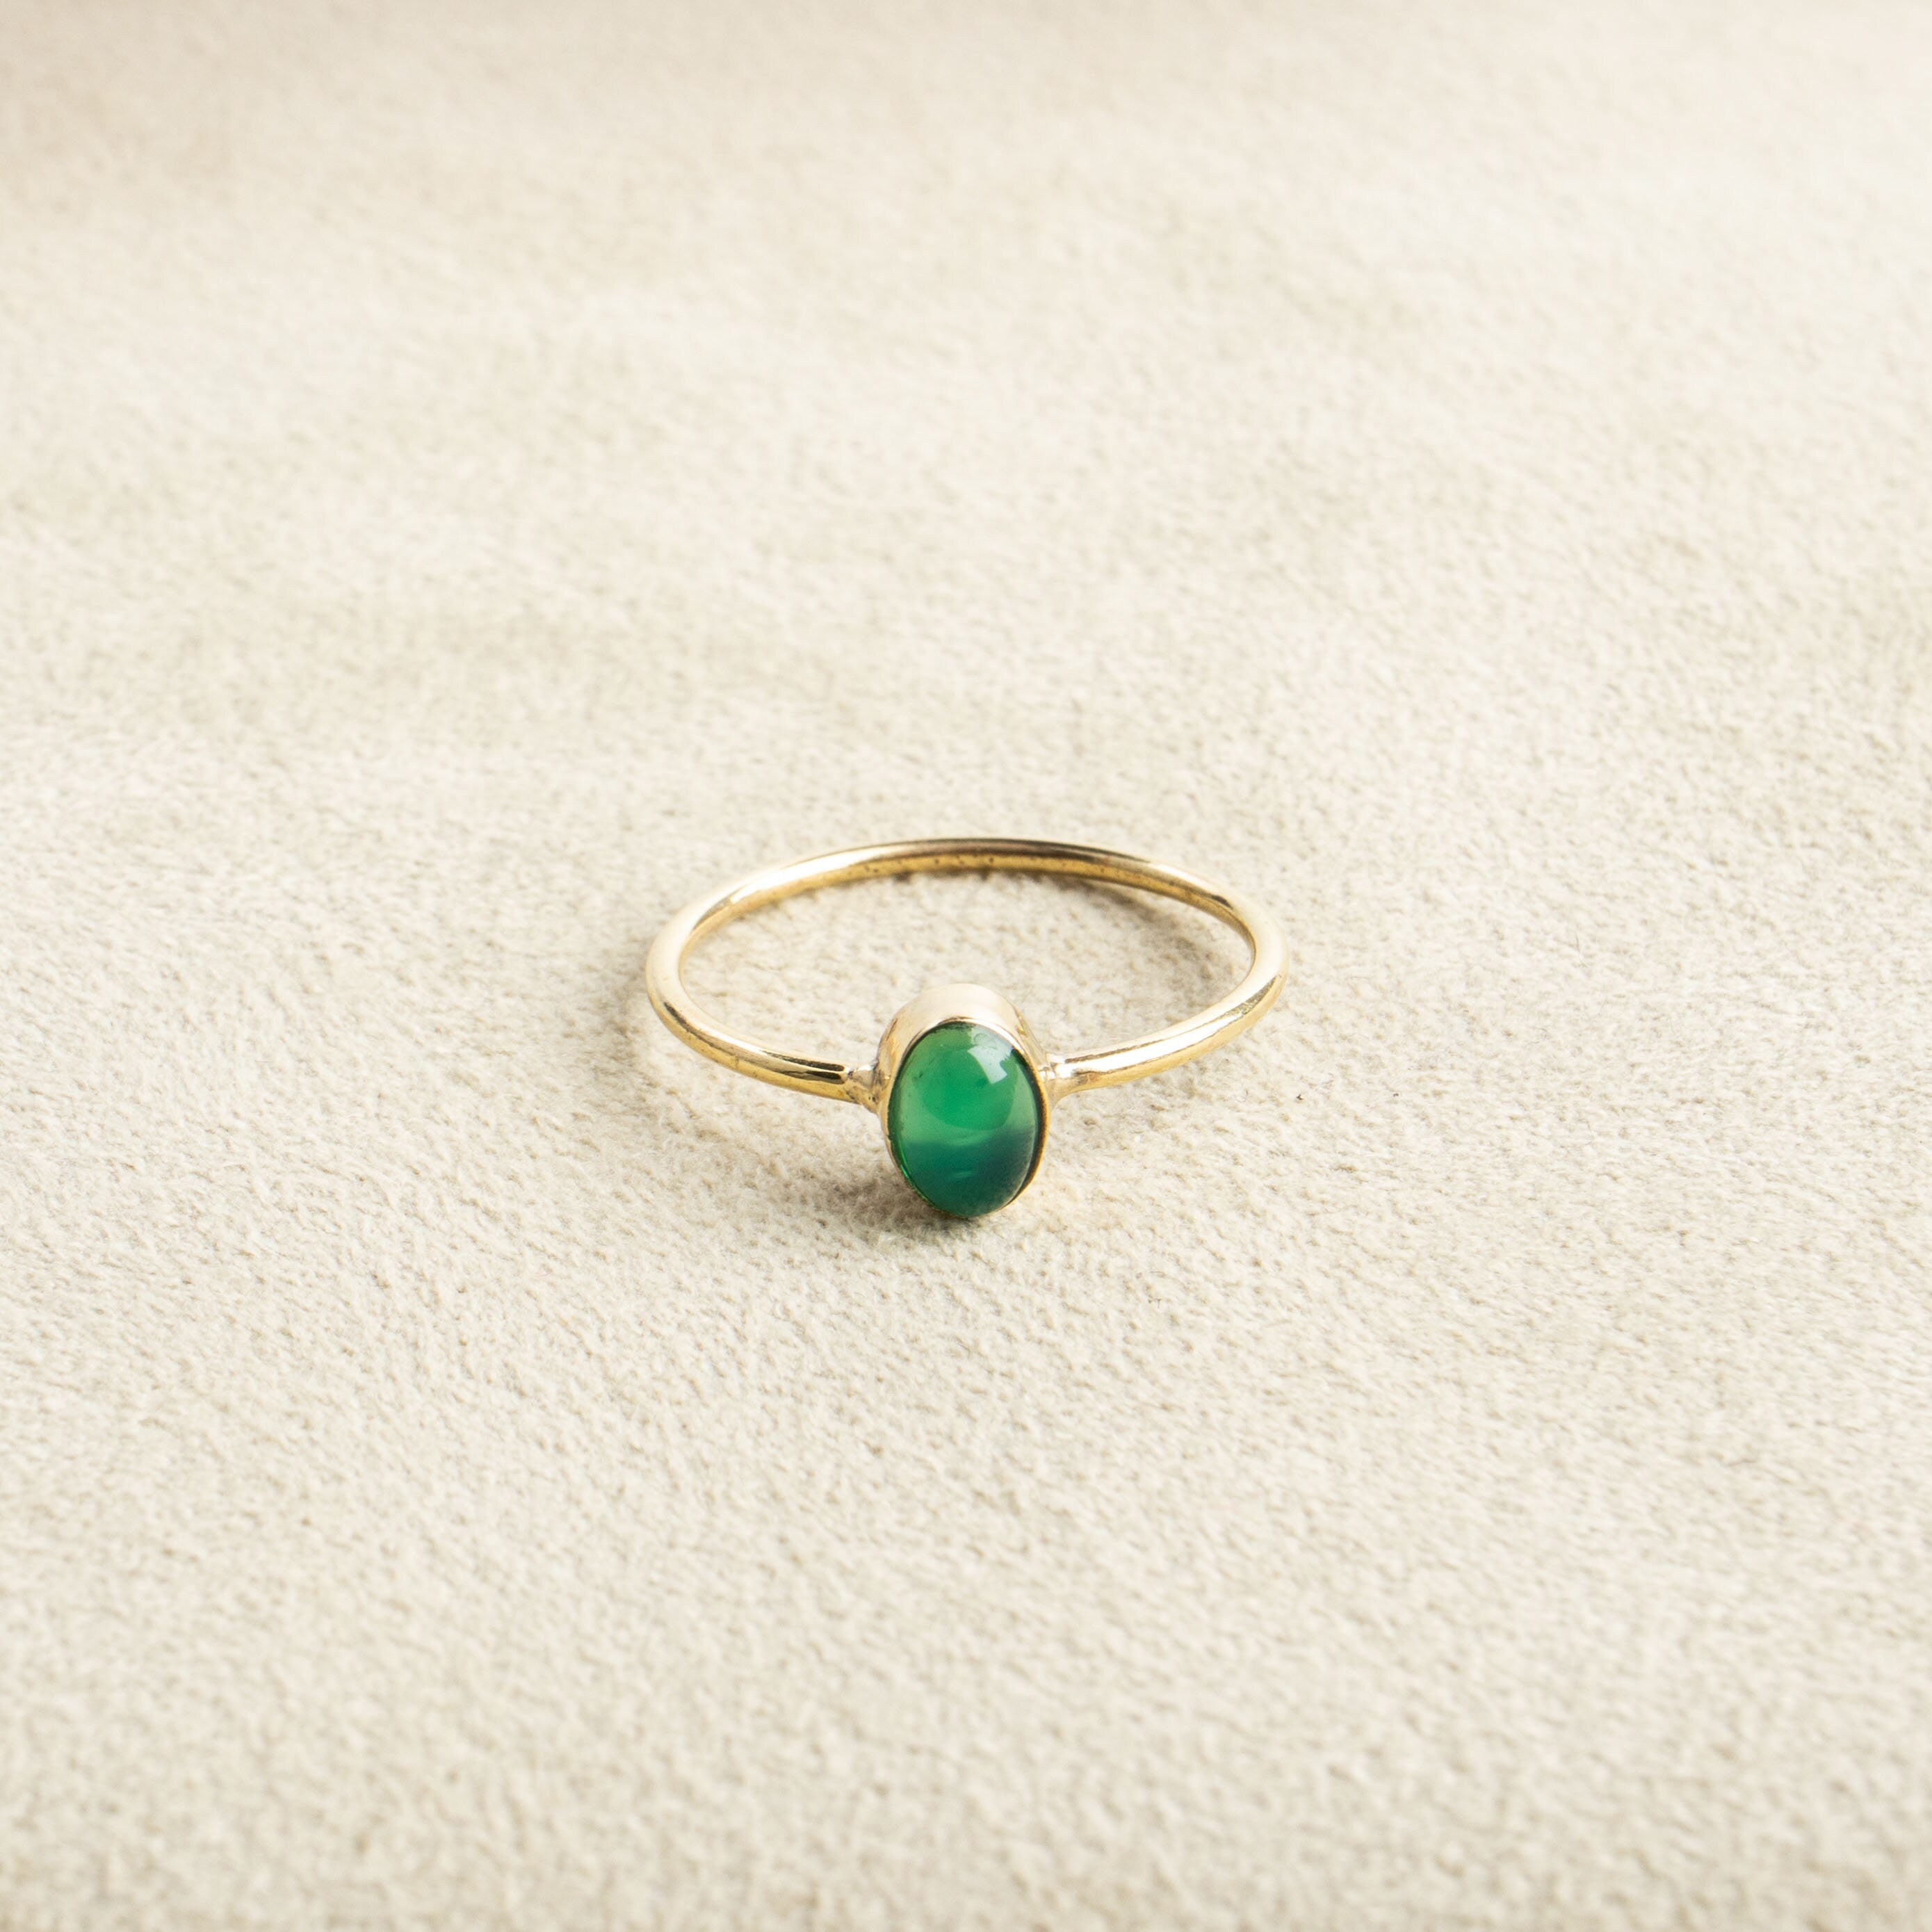 Feiner grüner Onyx Ring mit ovalem Stein handgemacht